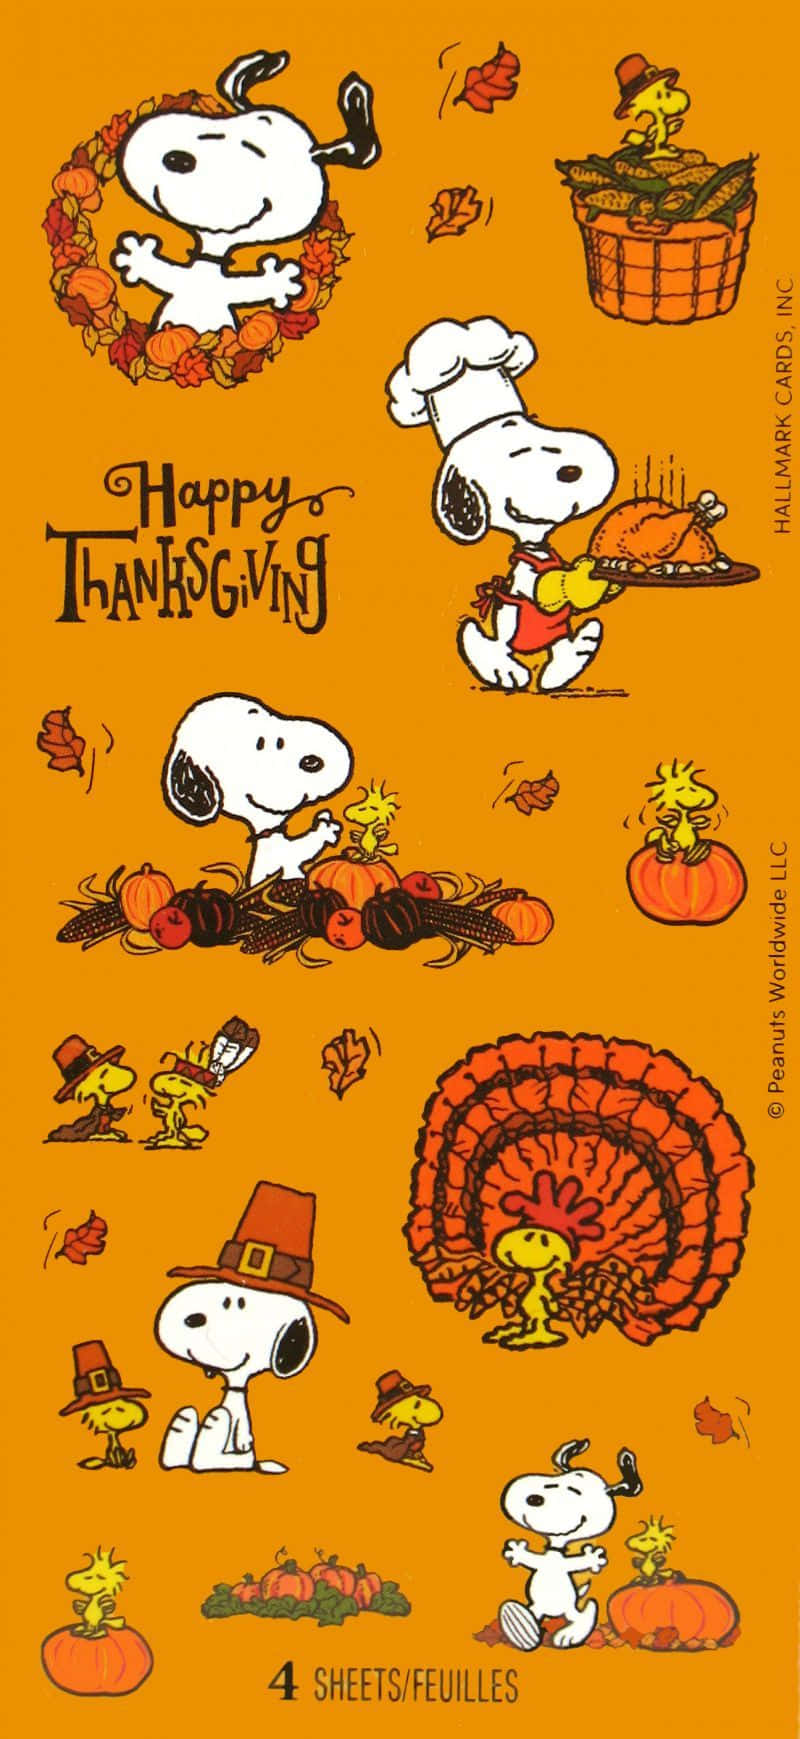 Snoopyfeiert Thanksgiving Mit Familie Und Freunden Wallpaper